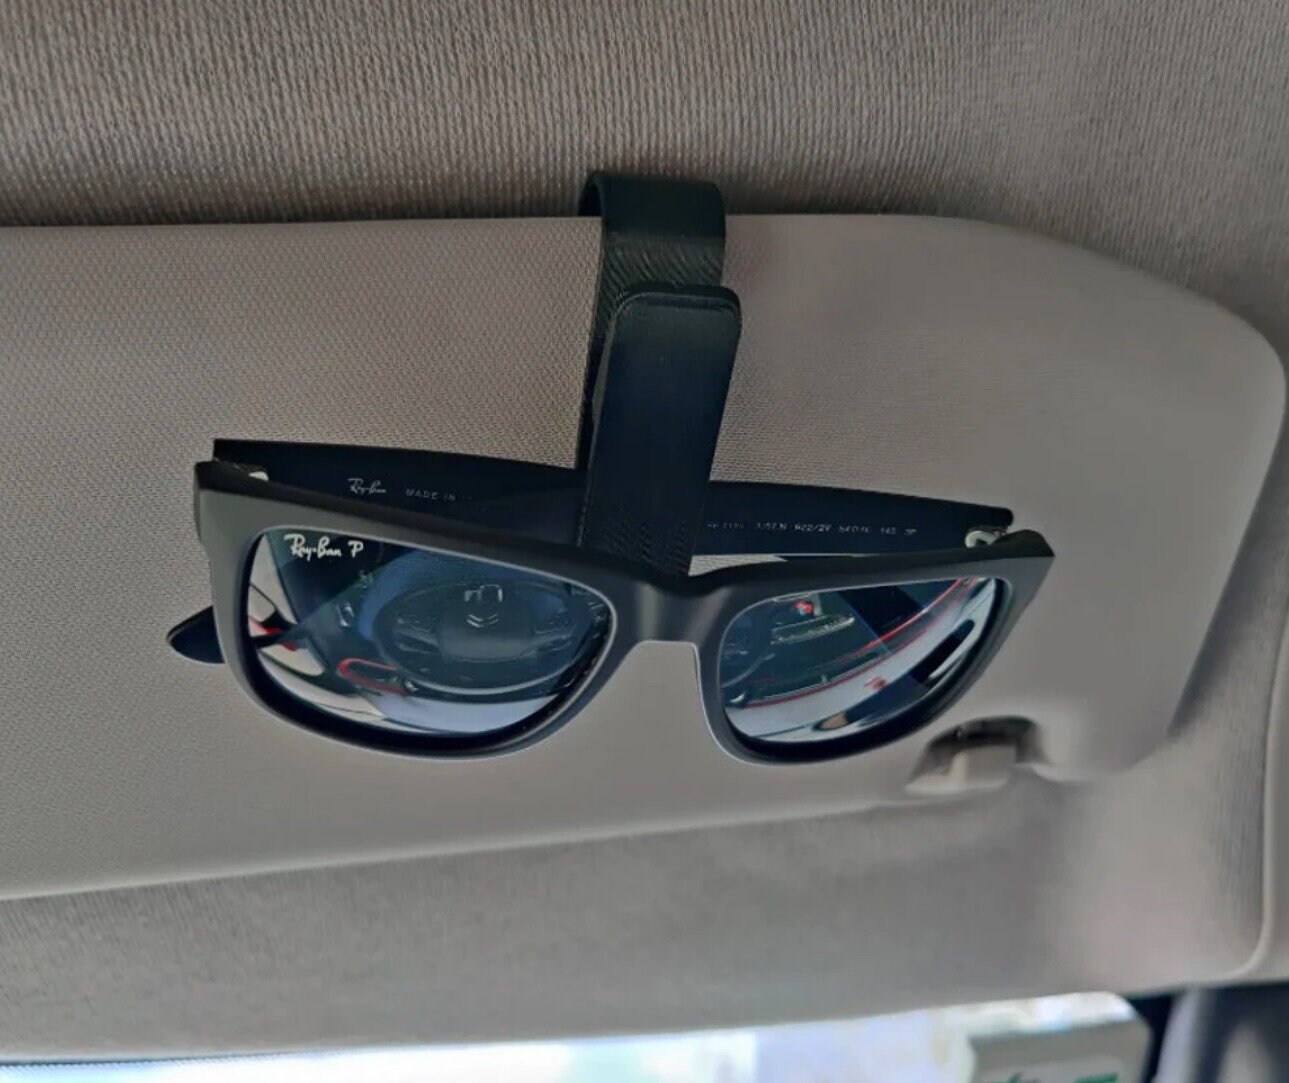 1pc Auto Brillenhalter Universal Auto Visier Sonnenbrillenhalter Clip Leder  Brillenbügel und Brillengestell für Auto (zufällige Farbe)